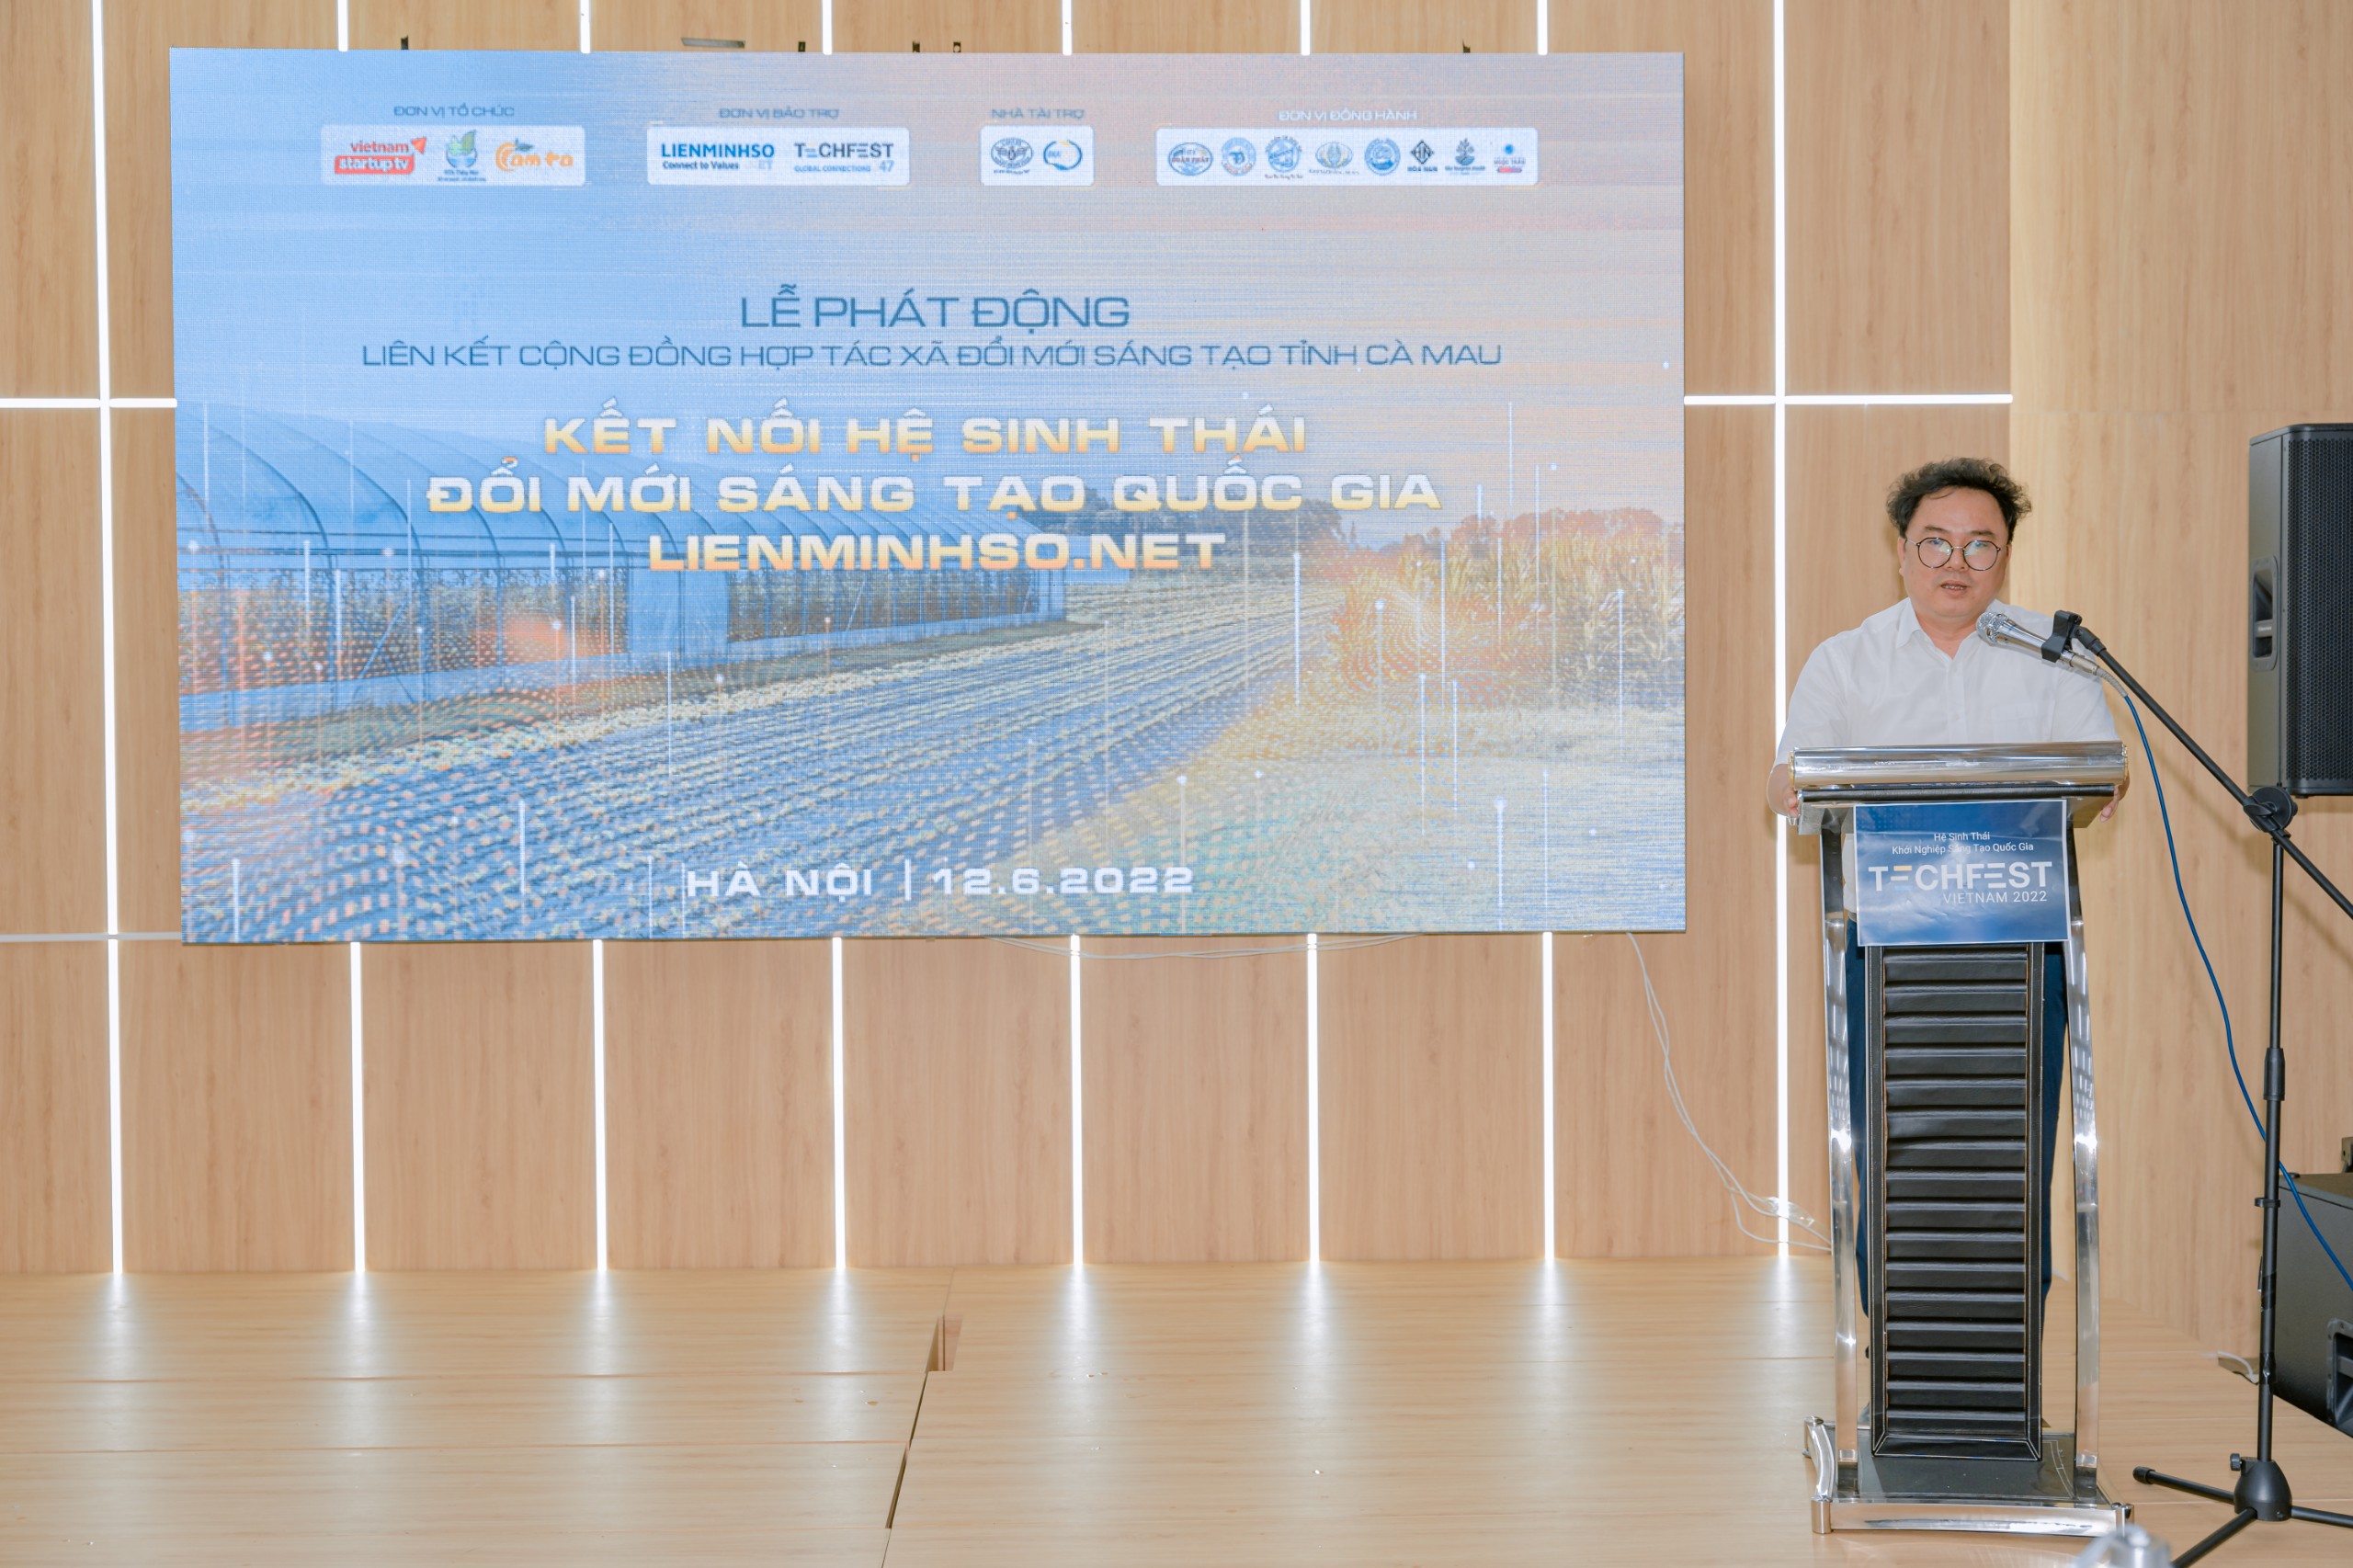 Ông Chu Quang Thái – Thường trực phía Nam Trung tâm khởi nghiệp sáng tạo quốc gia chia sẻ cảm nhận về cộng đồng HTX tỉnh Cà Mau